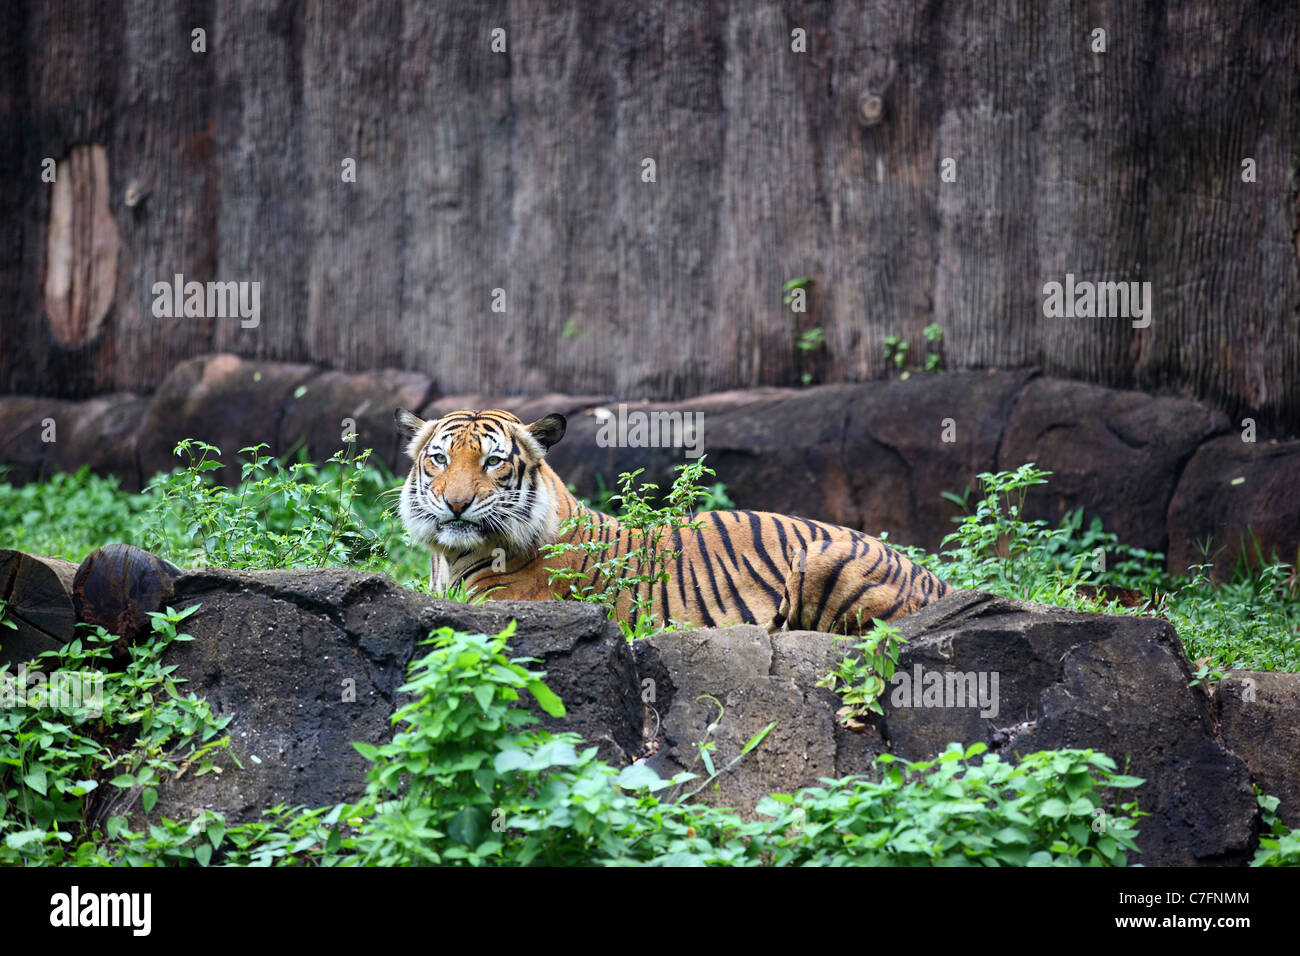 Malaysian tiger making eye contact with camera at Melaka zoo. Stock Photo